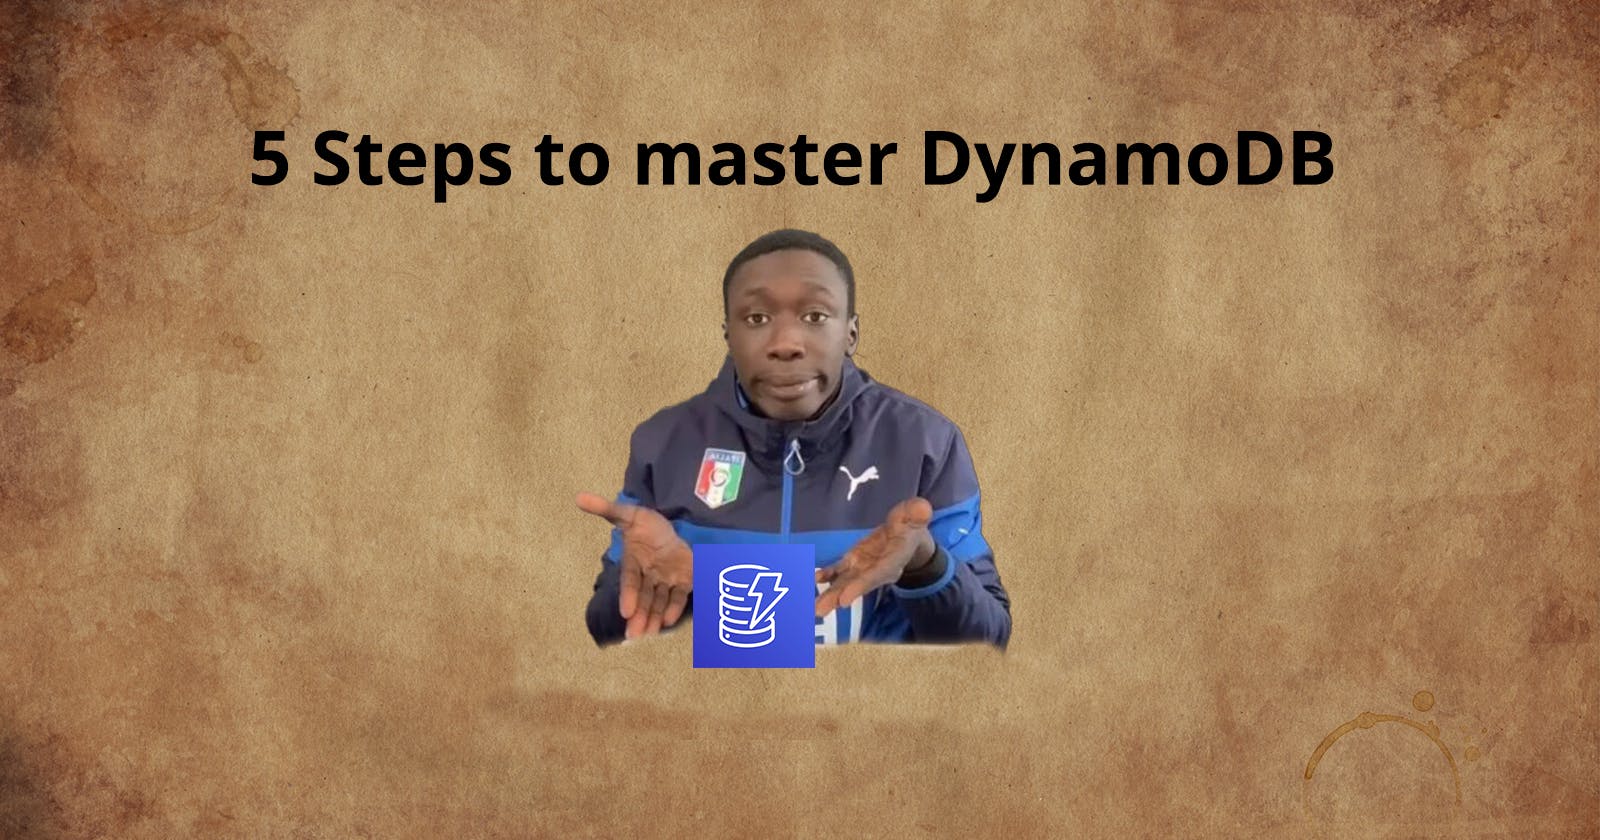 5 Simple Steps to master DynamoDB